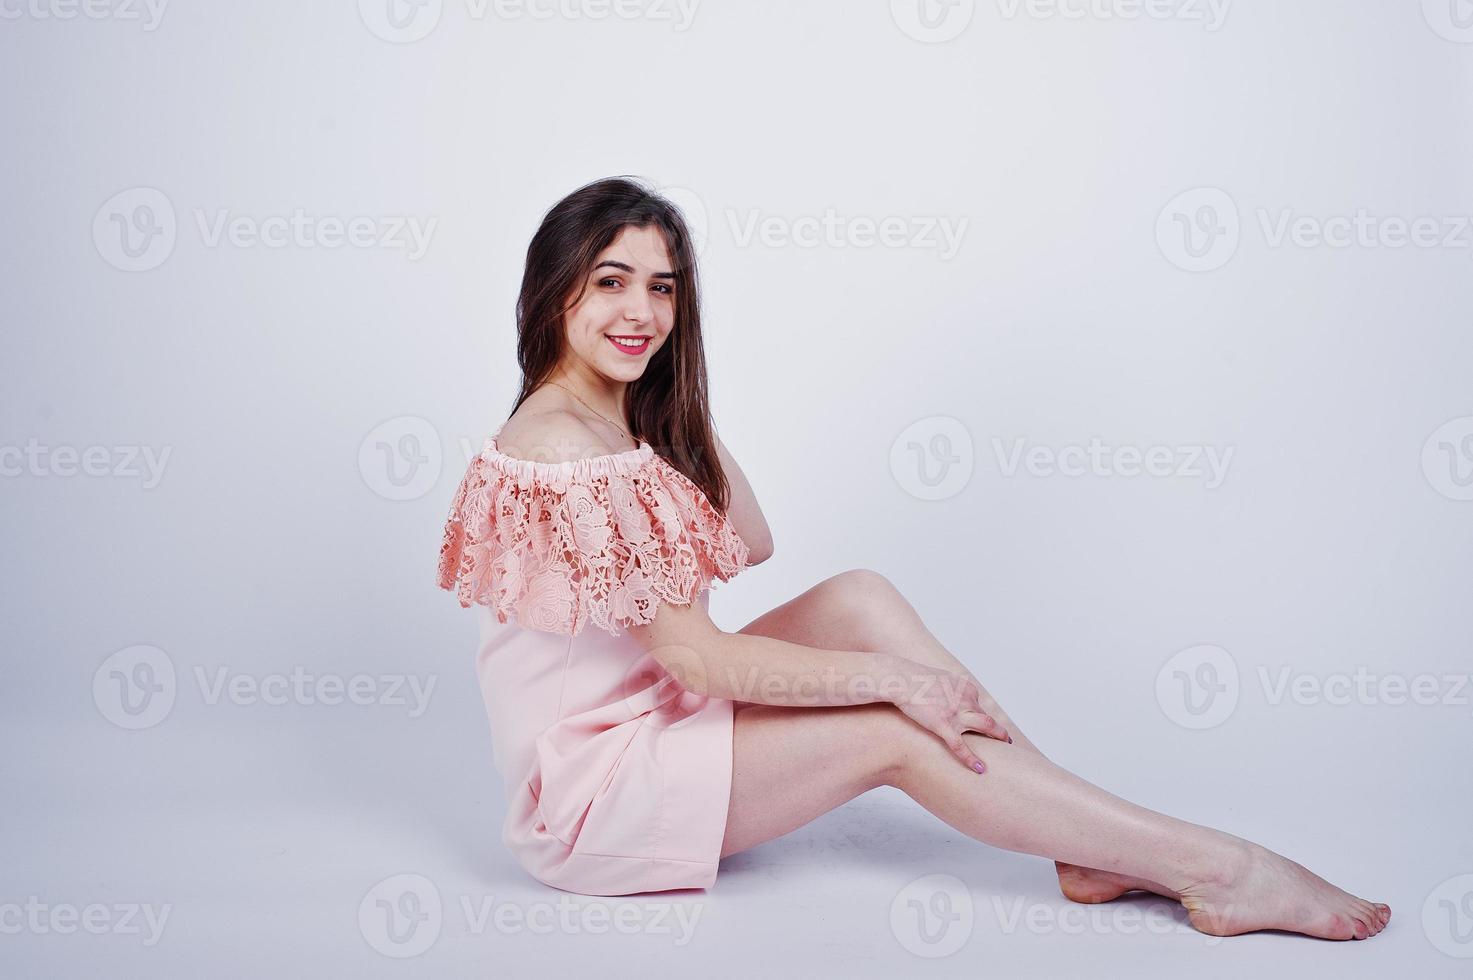 porträtt av en fashionabel kvinna i rosa klänning som sitter och poserar på golvet i studion. foto